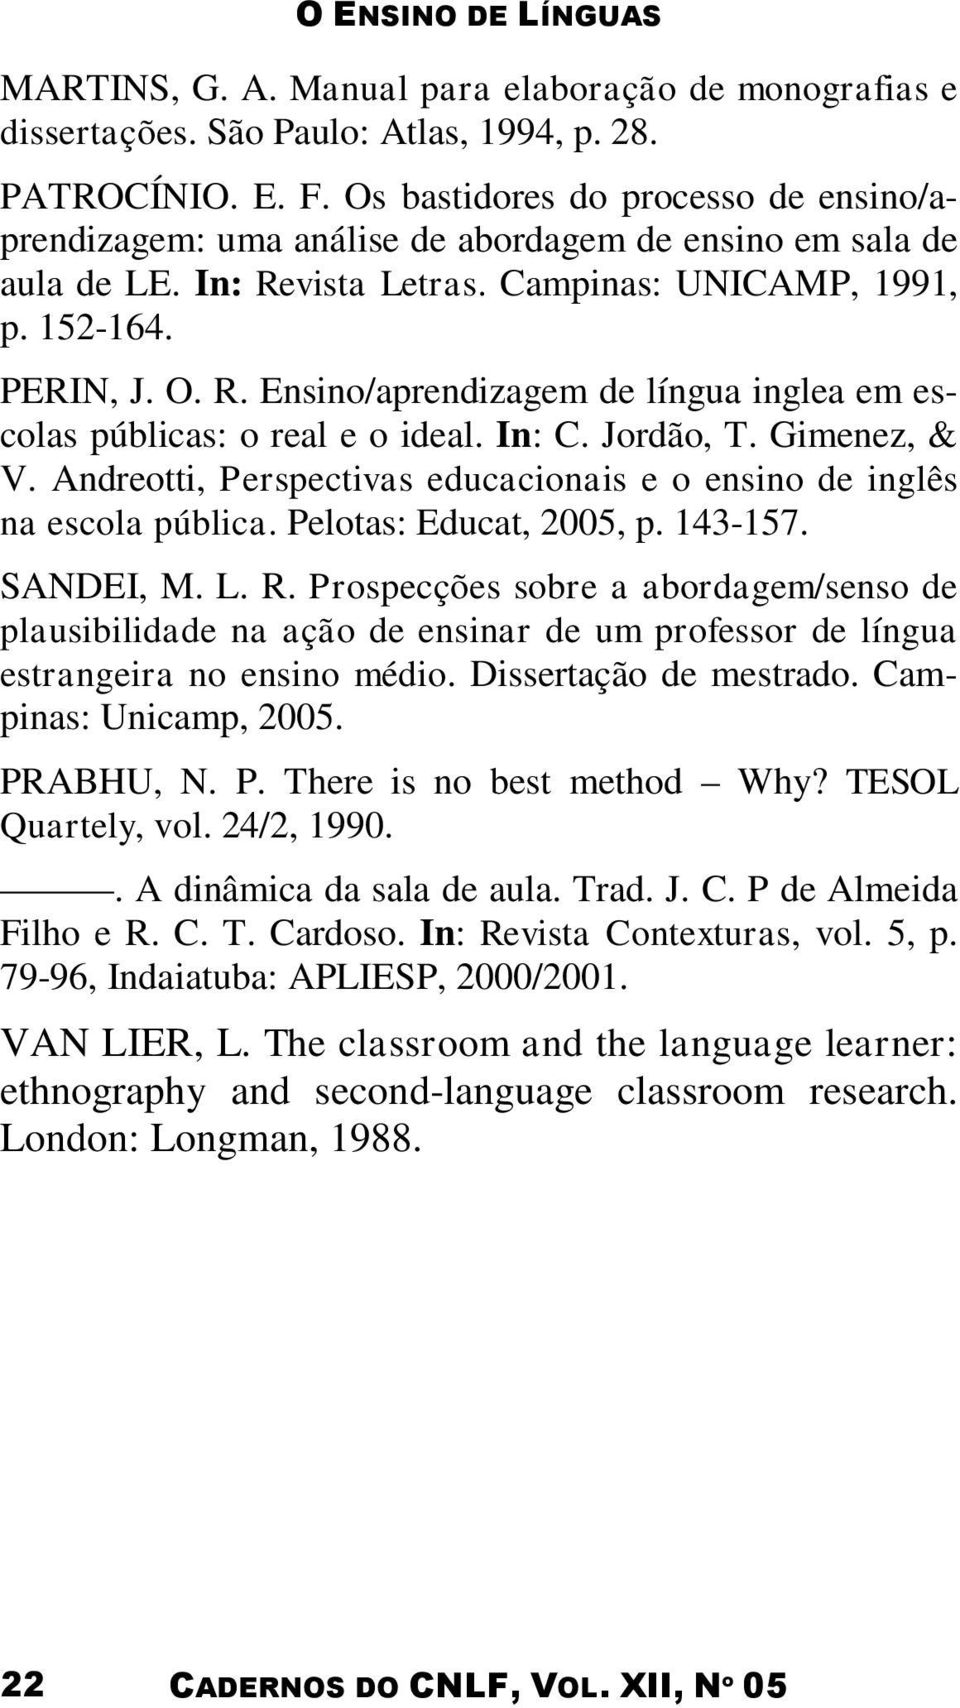 In: C. Jordão, T. Gimenez, & V. Andreotti, Perspectivas educacionais e o ensino de inglês na escola pública. Pelotas: Educat, 2005, p. 143-157. SANDEI, M. L. R.